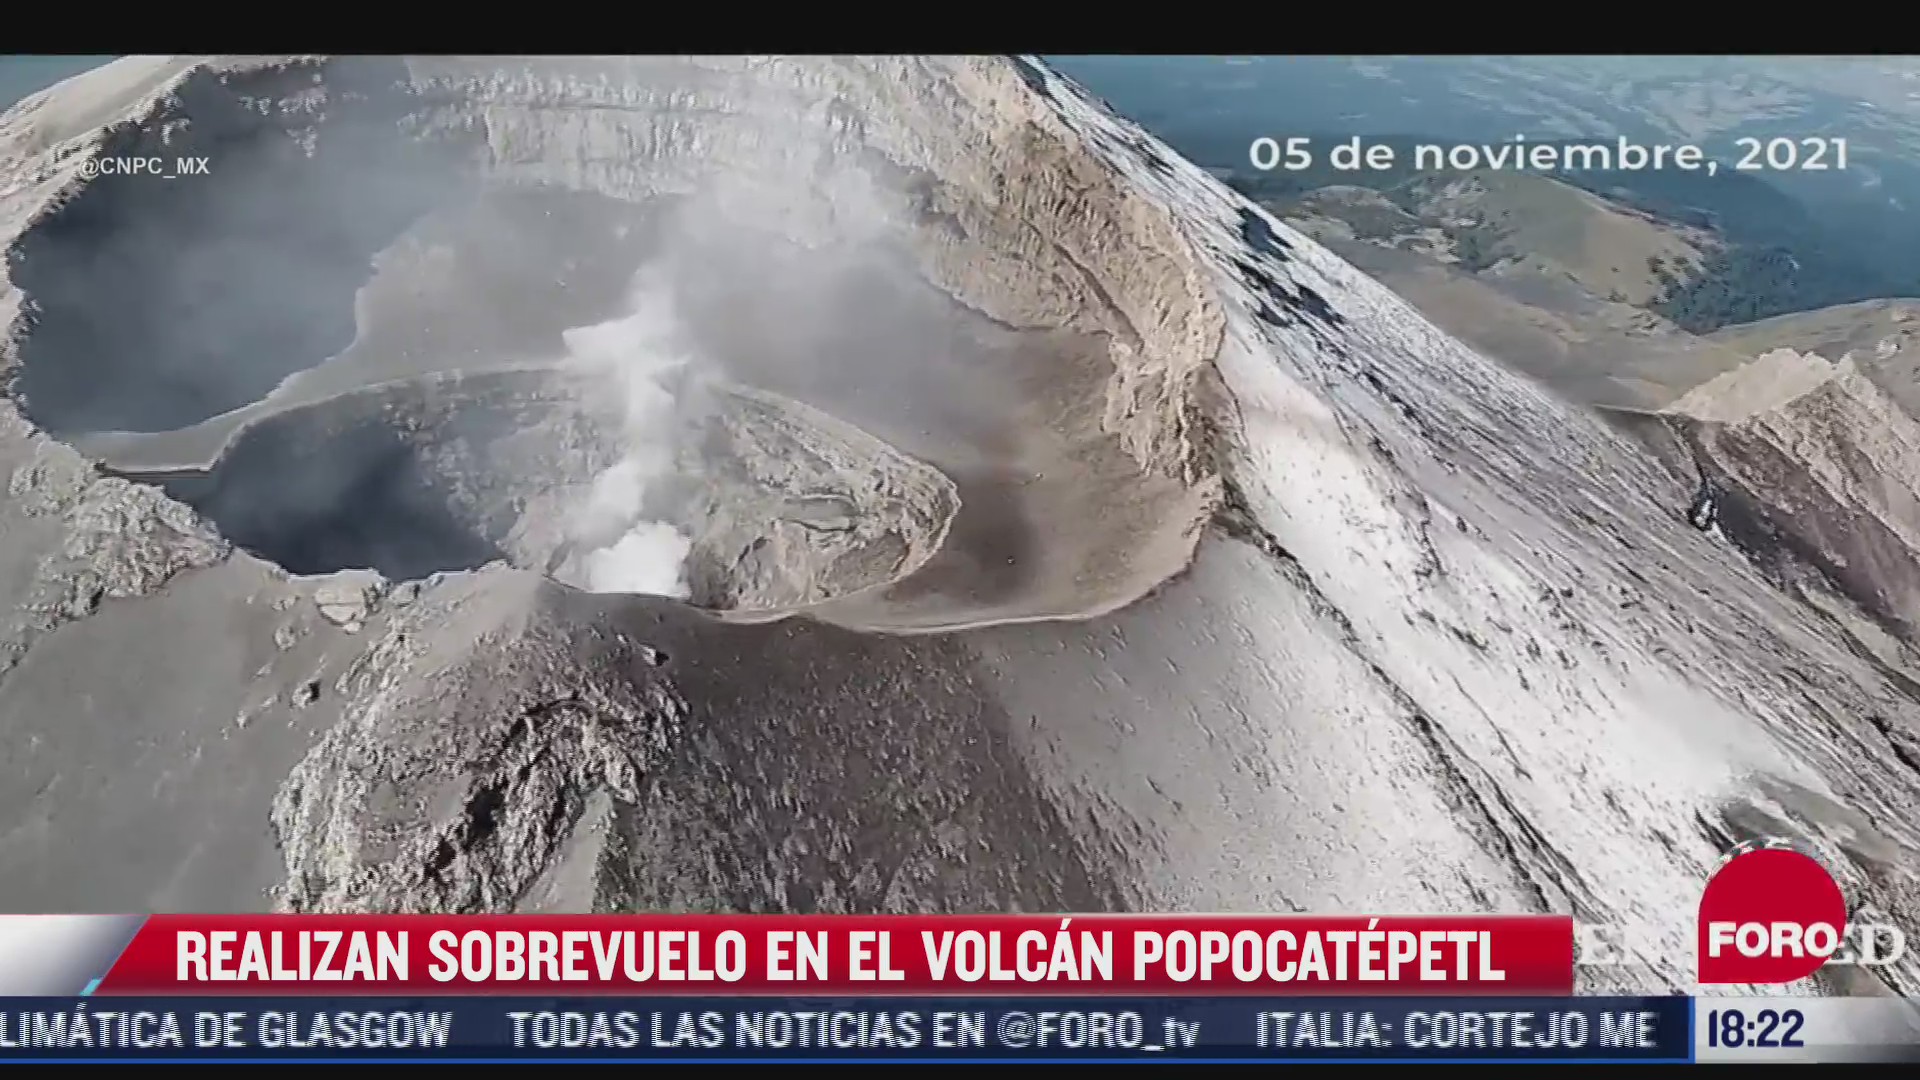 las impresionantes imagenes del volcan popocatepetl